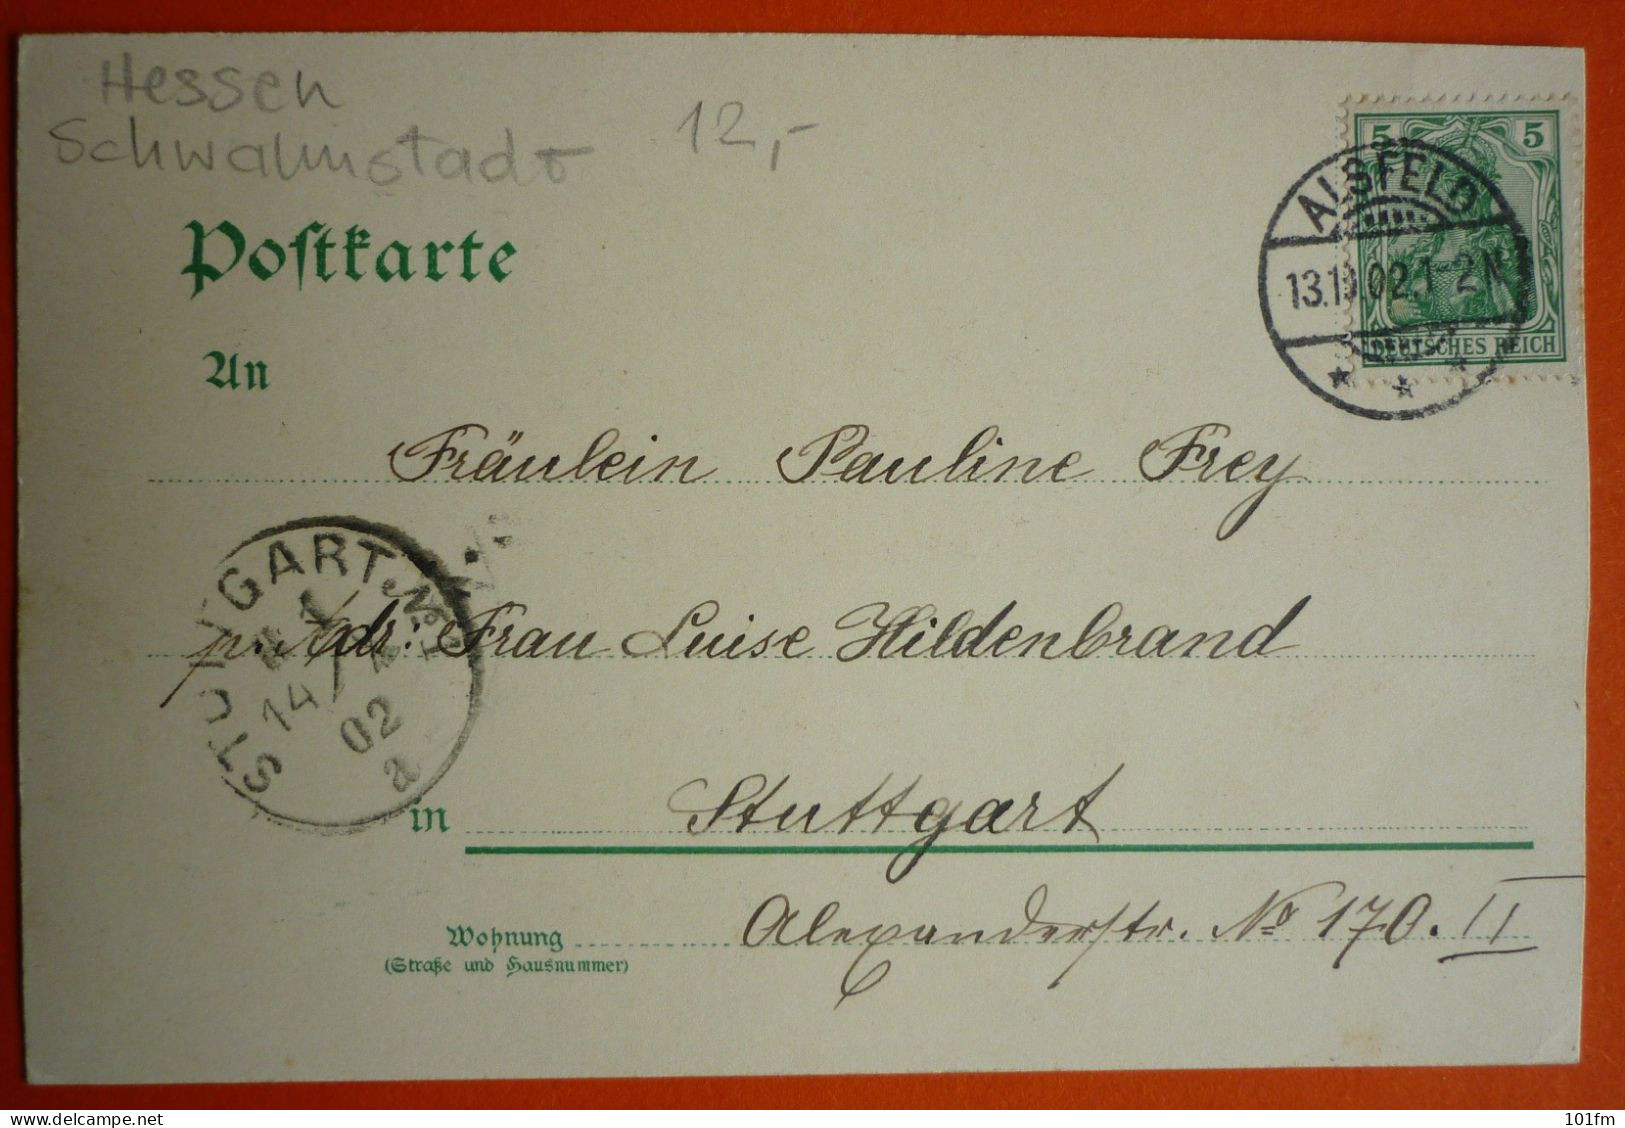 GERMANY - HESSE - GRUSS VON DER SCHWALM., OLD LITHO 1902 - Schwalmstadt